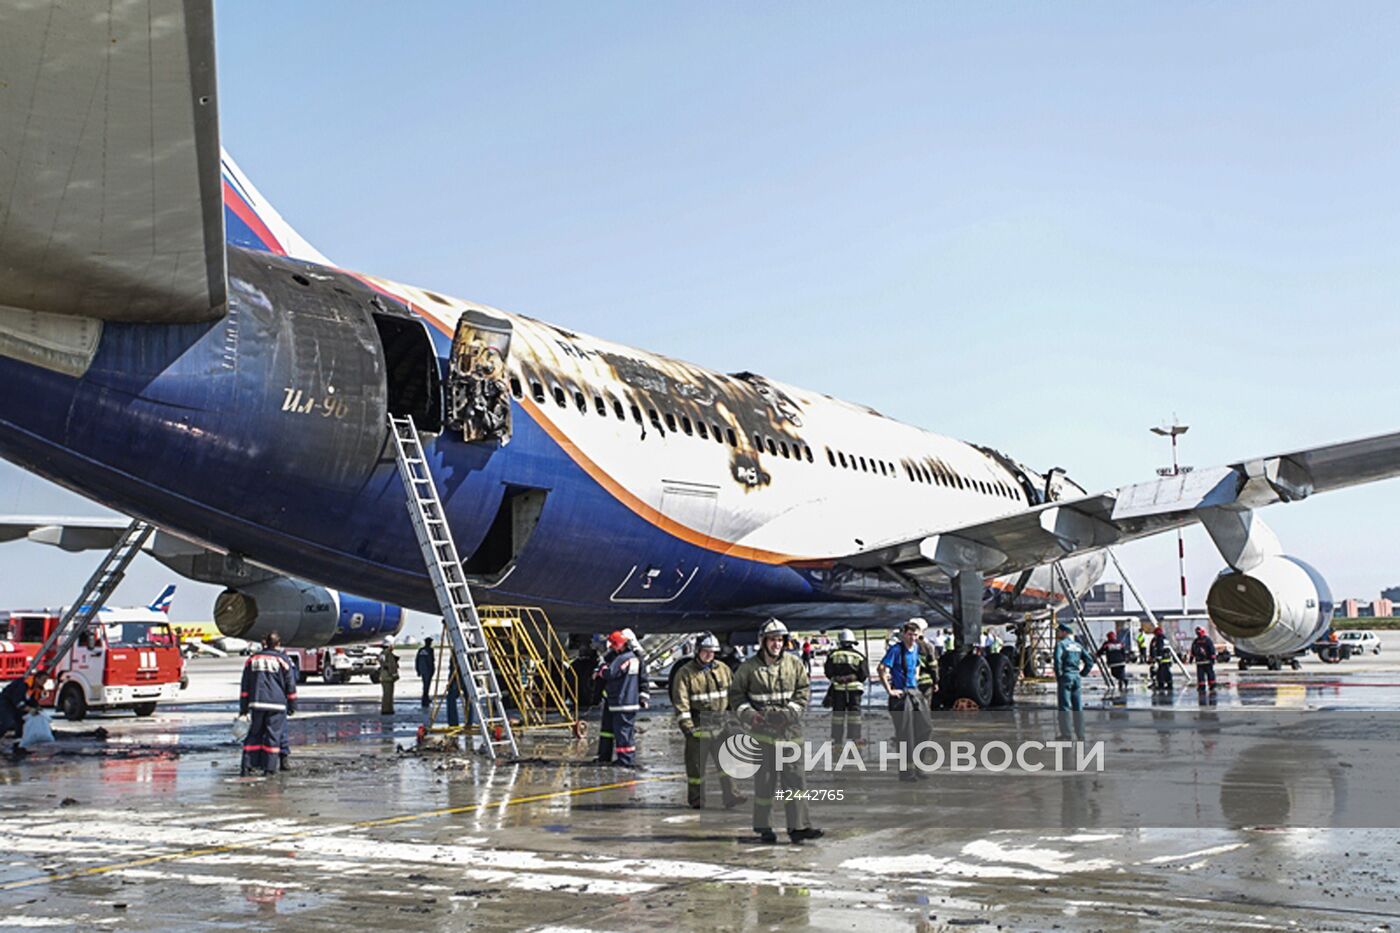 Пожар на Ил-96 в московском аэропорту "Шереметьево" потушен